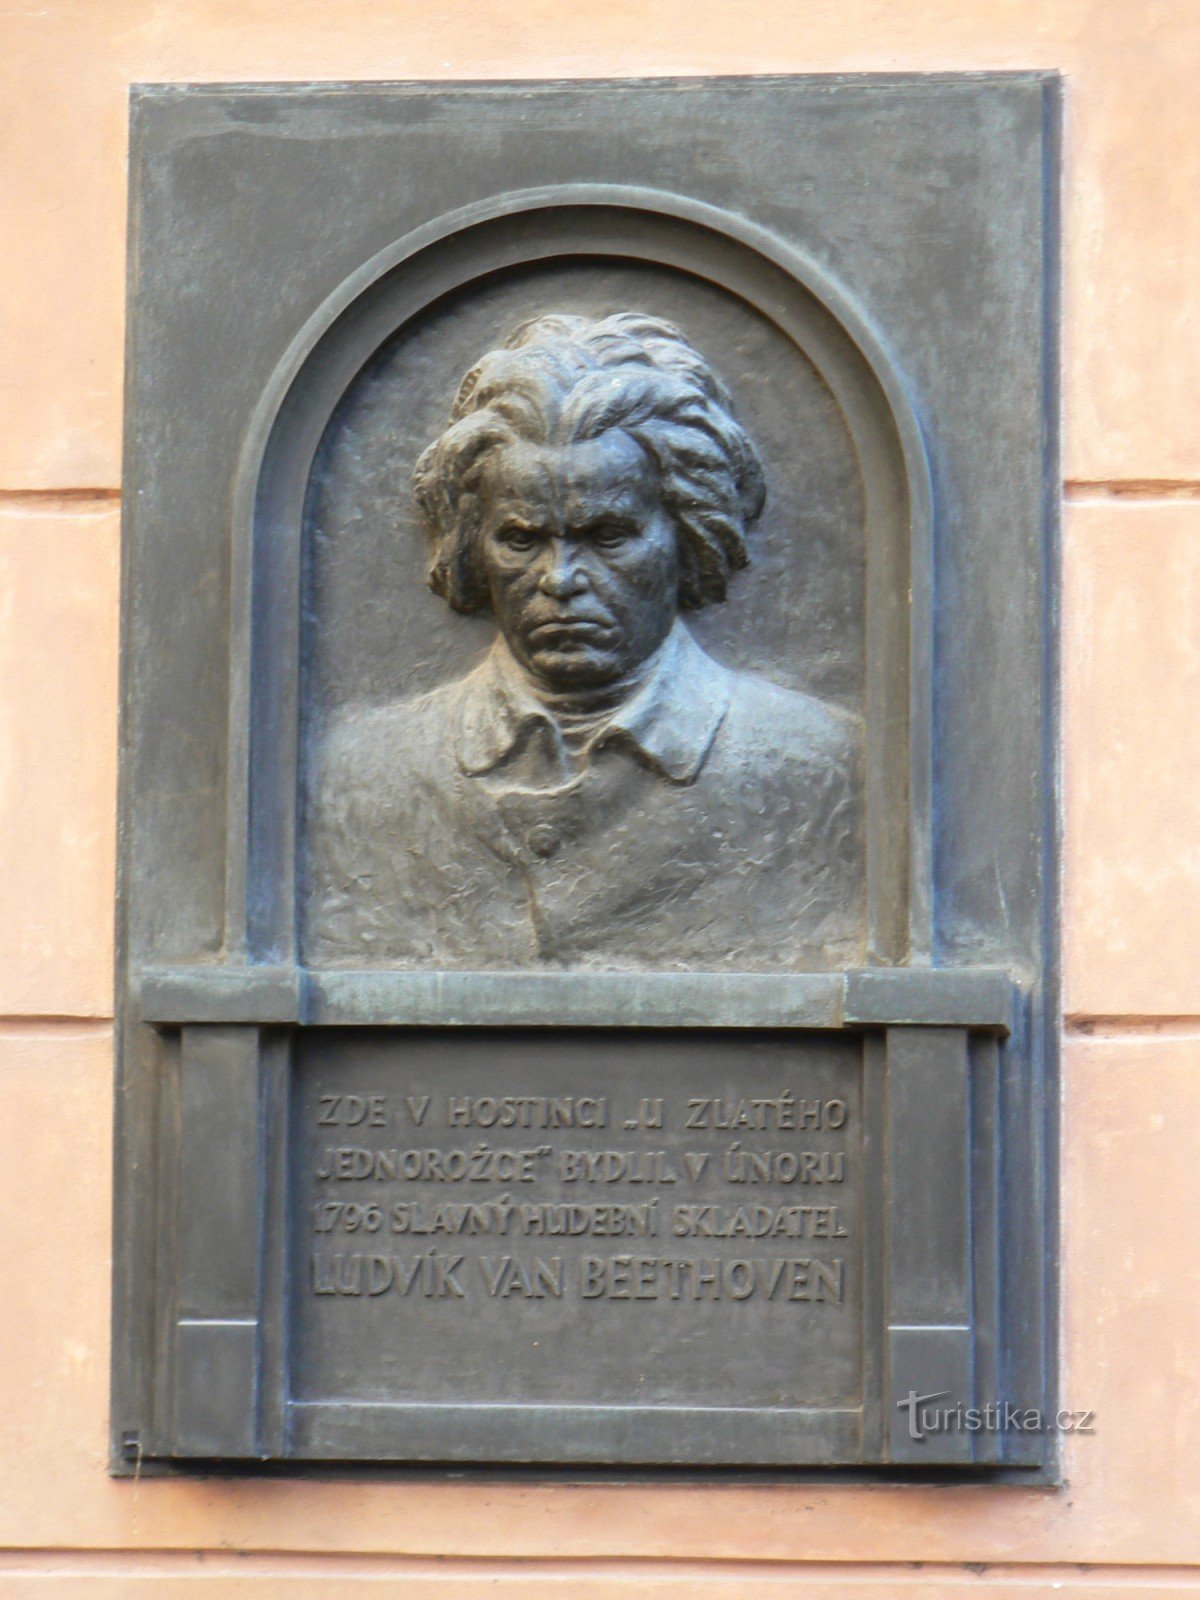 Ludvík van Beethoven placa memorial